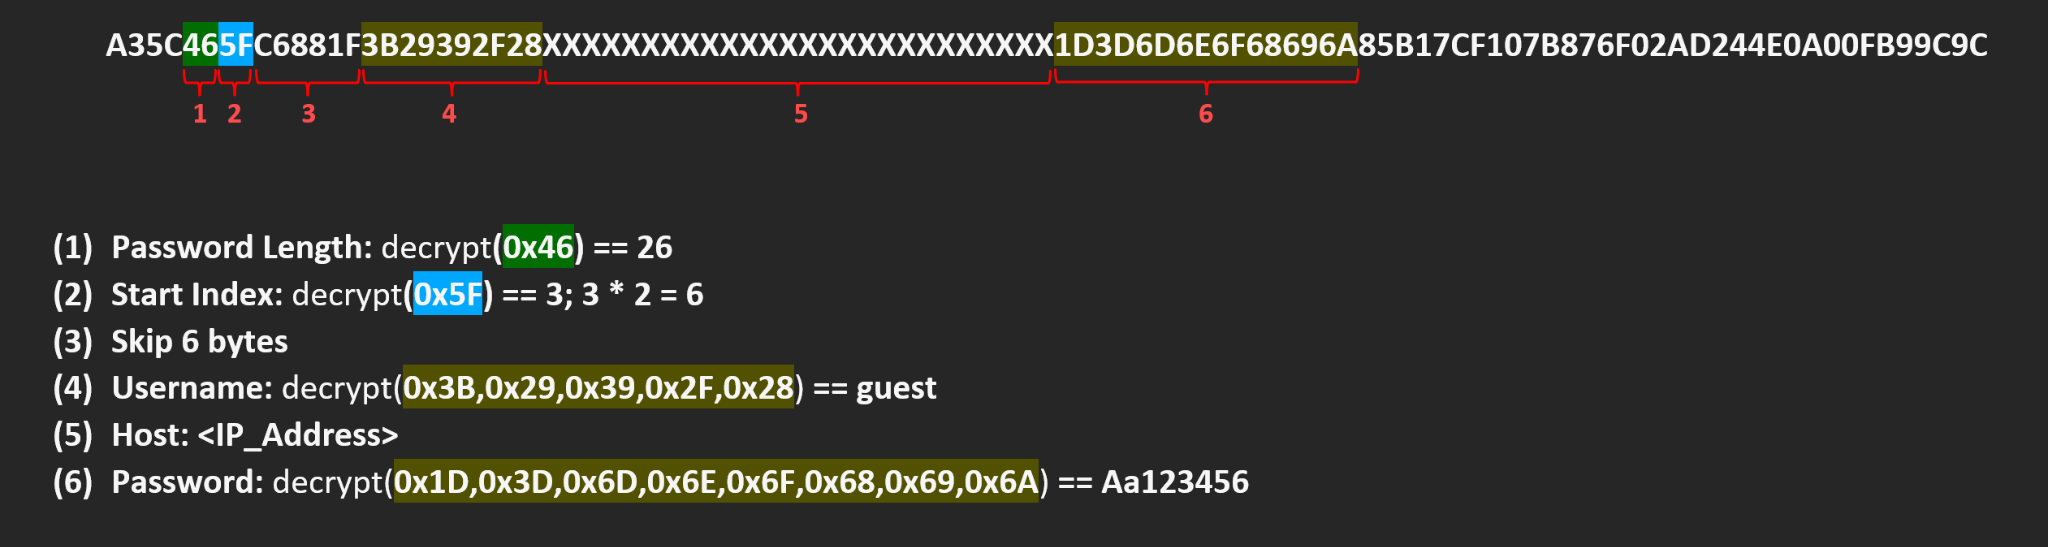 このスクリーンショットは、レジストリの値をインデックス「開始インデックス + UserNameの長さ + HosNameの長さ」から「長さ」まで復号すればパスワードを得られることを示しています。その結果がパスワードです。 